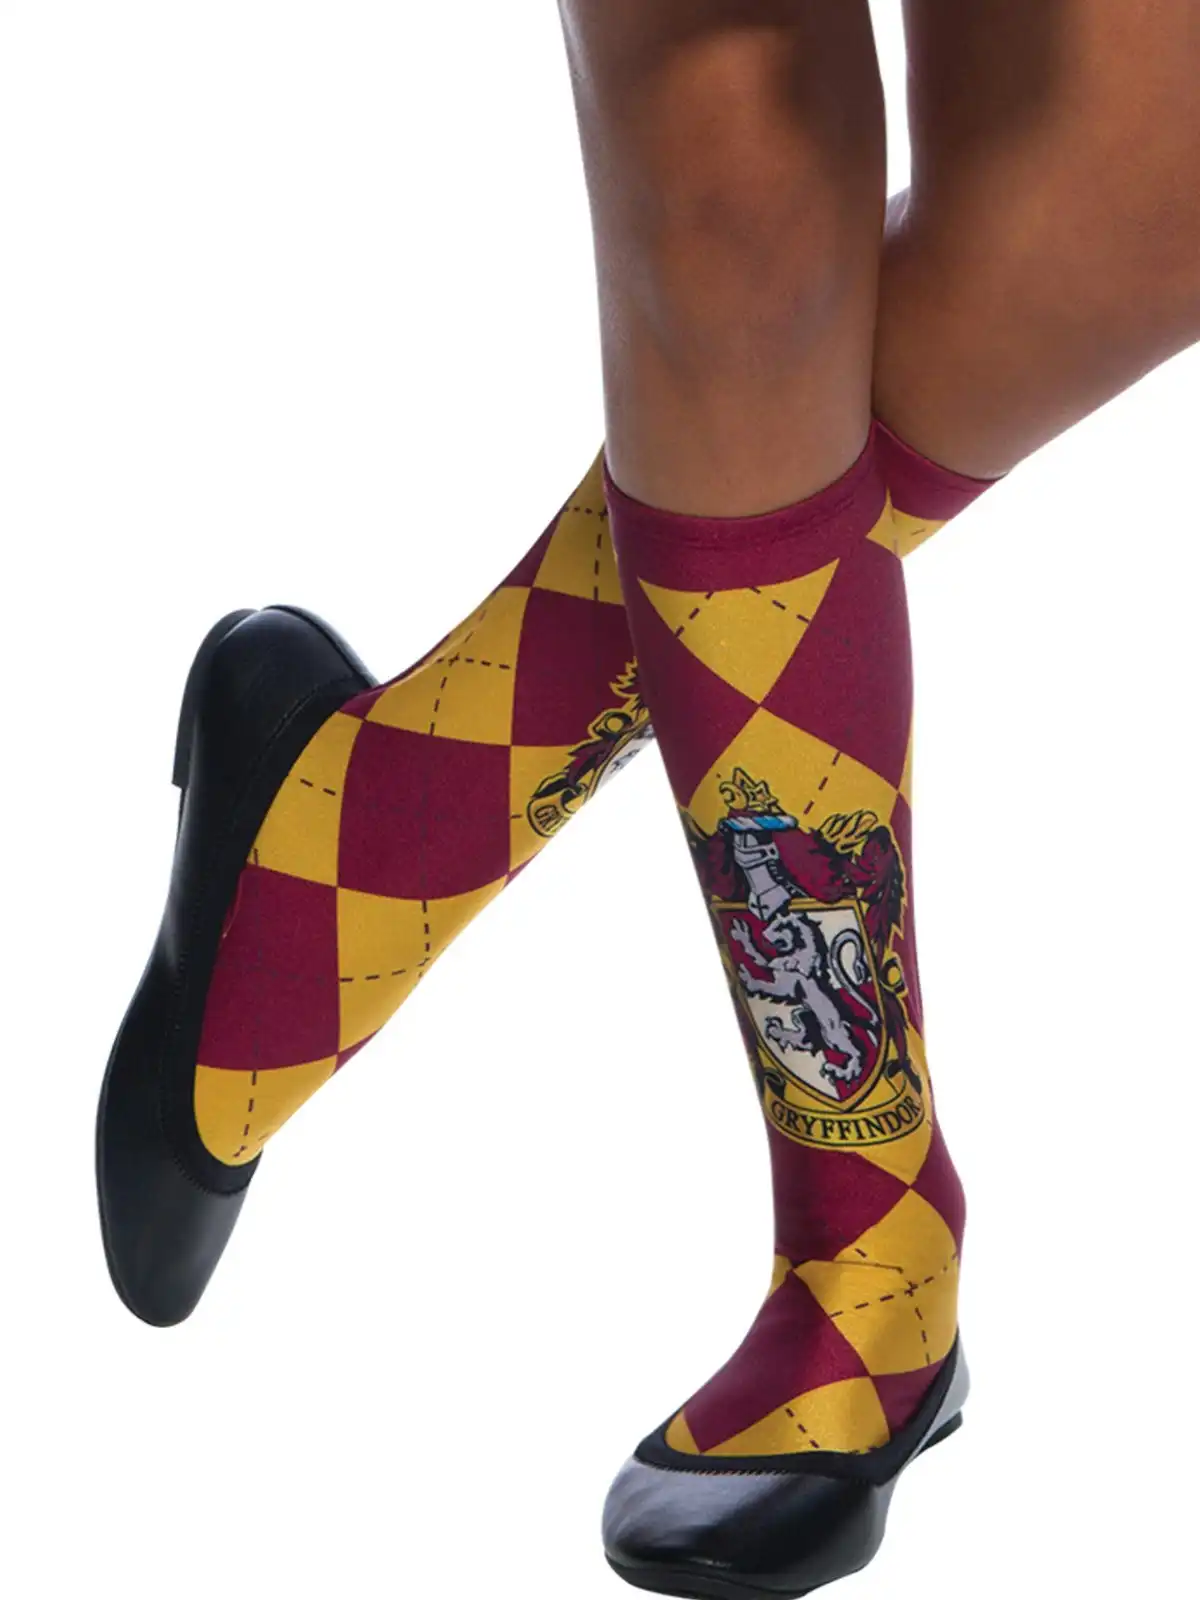 Harry Potter Gryffindor Knee High Socks Kids/Child Dress Up Party Costume 6-11